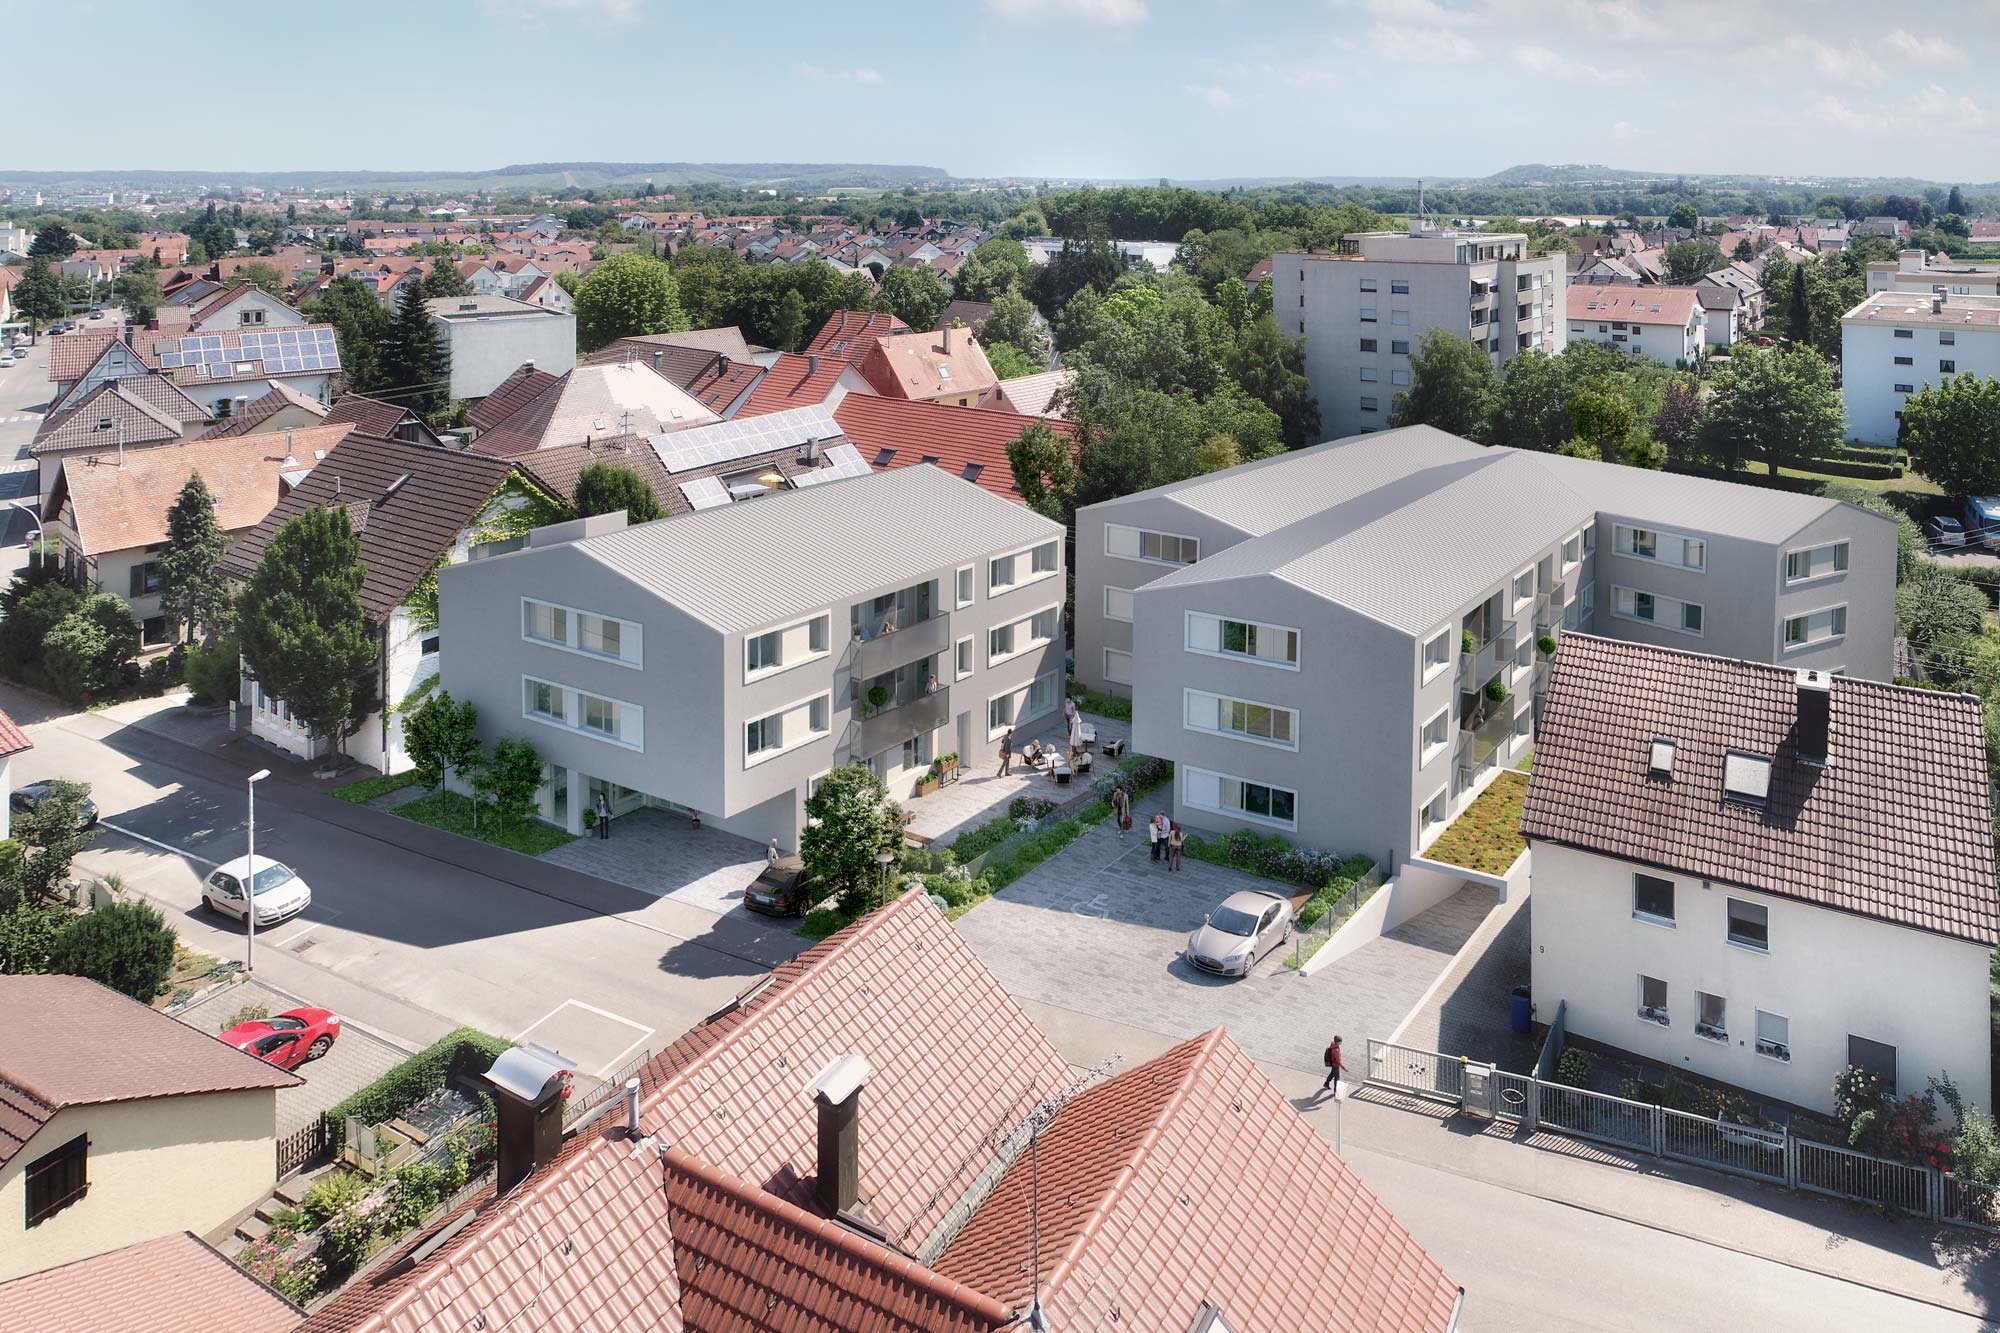 Seniorenwohnungen mit Tagesbetreuung und einer Arztpraxis in Heilbronn-Horkheim